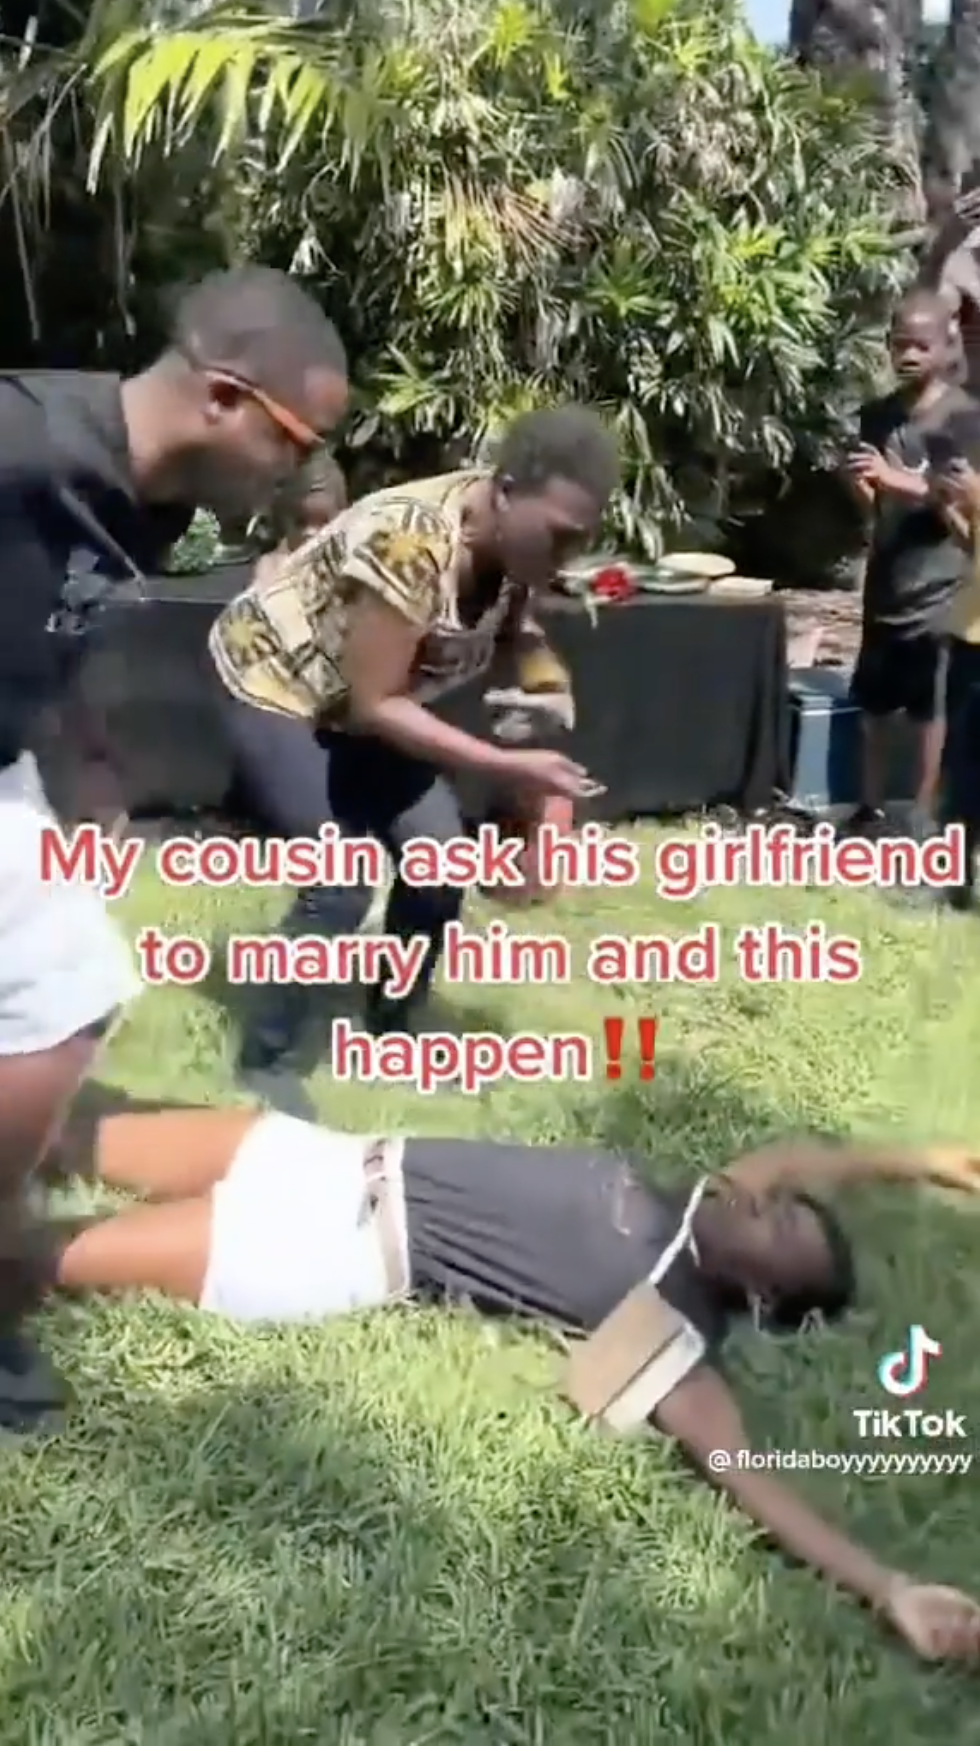 lady faints boyfriend proposed